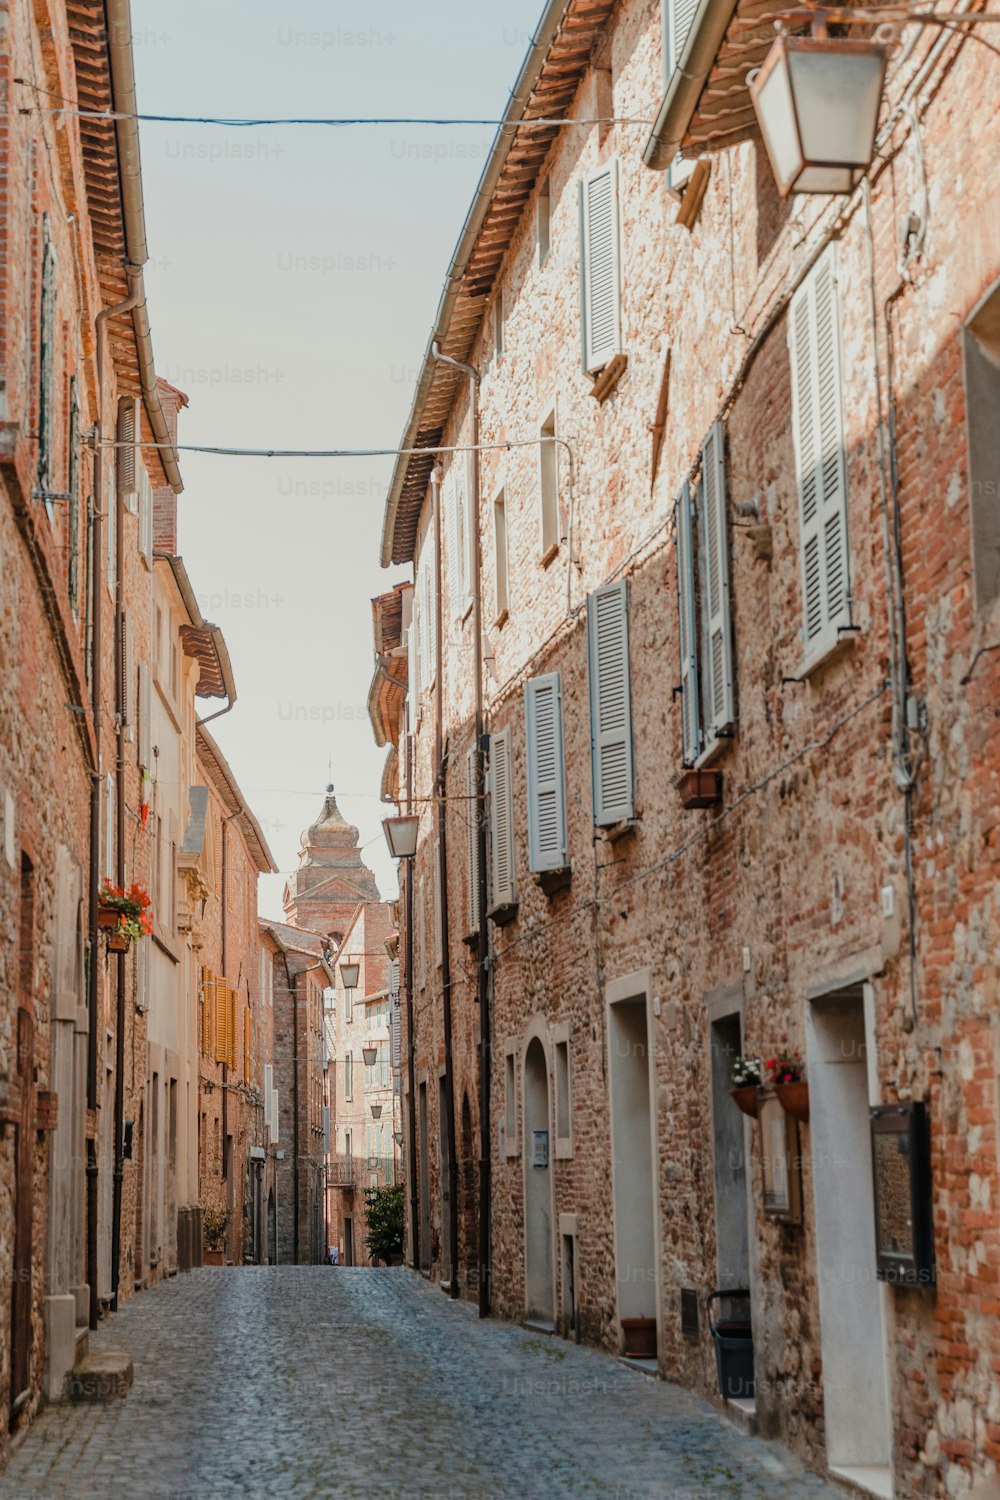 a cobblestone street in an old european town